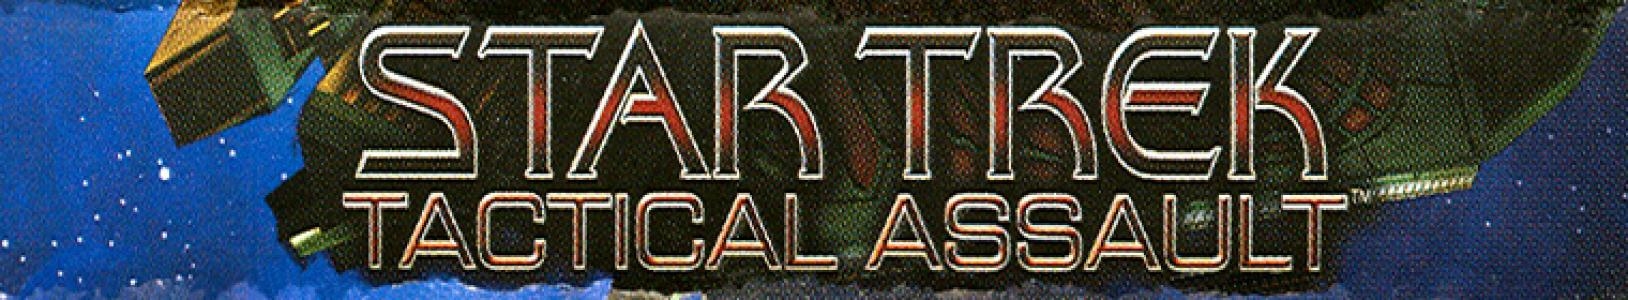 Star Trek: Tactical Assault banner